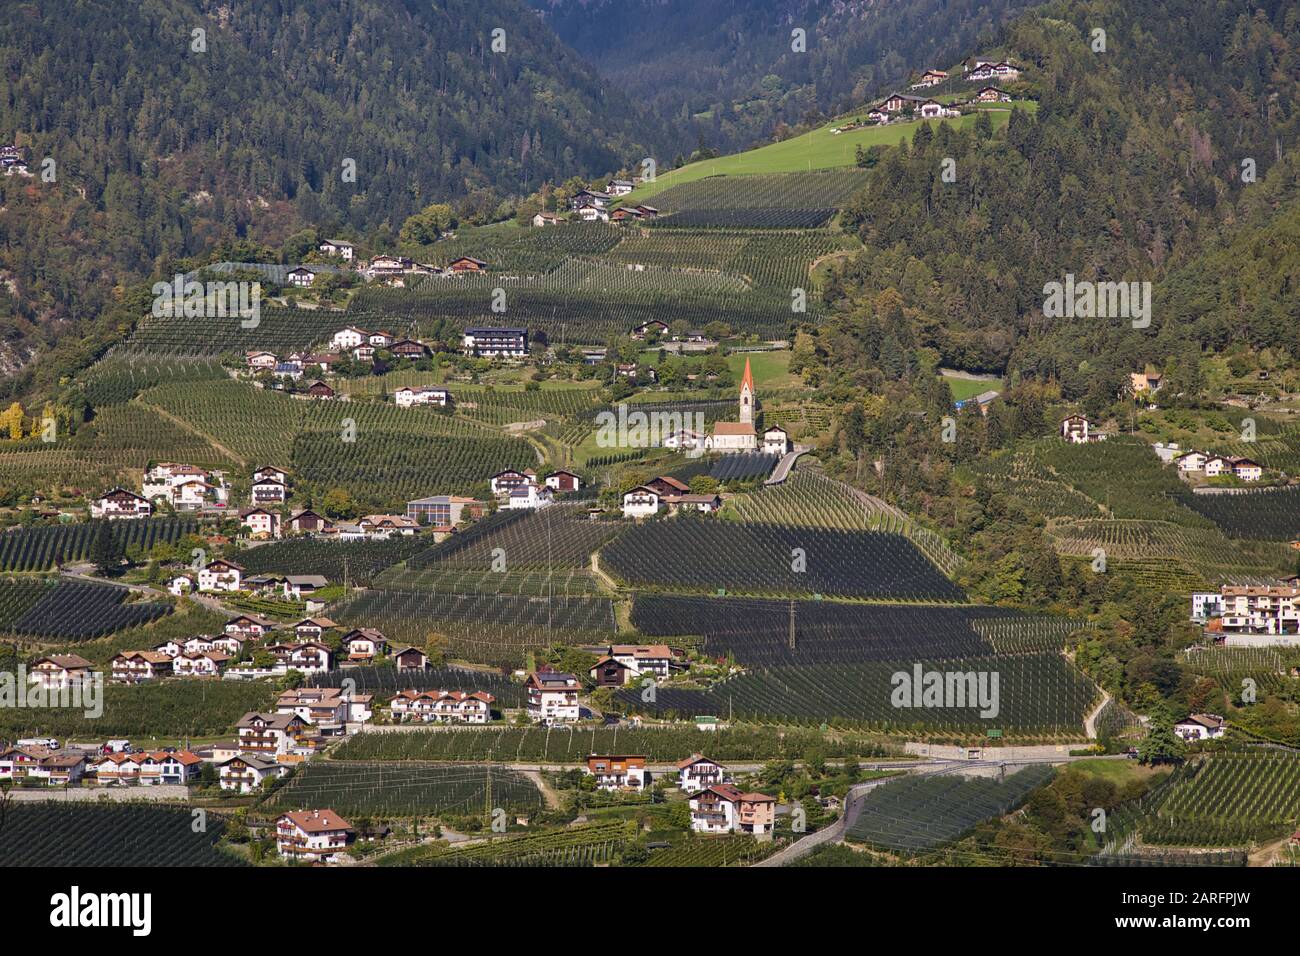 Le village de Riffian et de vergers de pommiers, vue de Schenna, près de Meran, Tyrol du Sud, Italie Banque D'Images